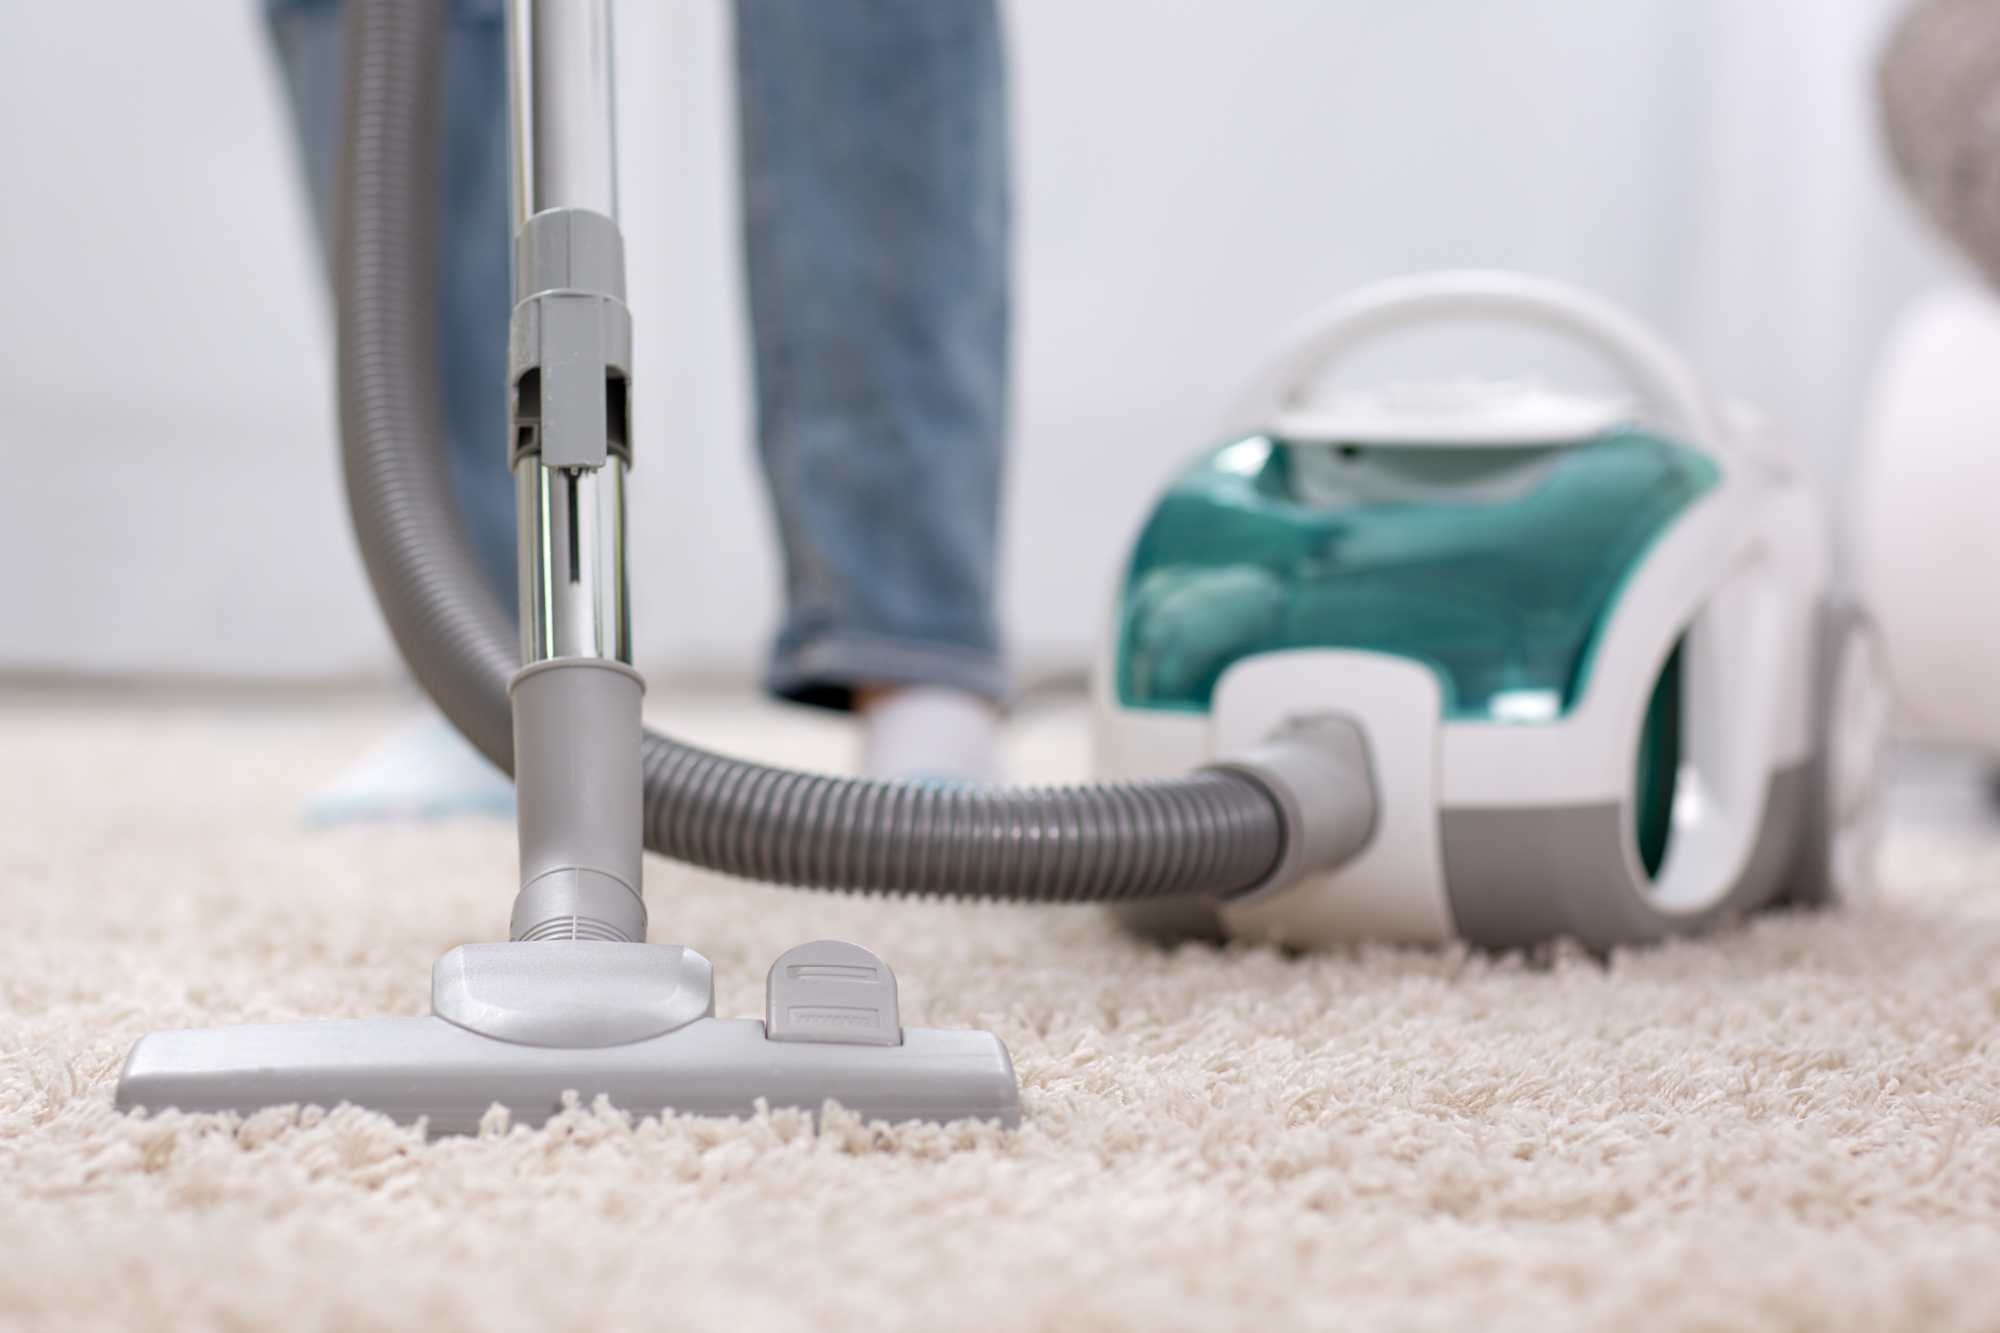 Робот пылесос enchen vacuum cleaner. Пылесос. Пылесос на ковре. Carpet Cleaner пылесос. Чистка пылесоса.